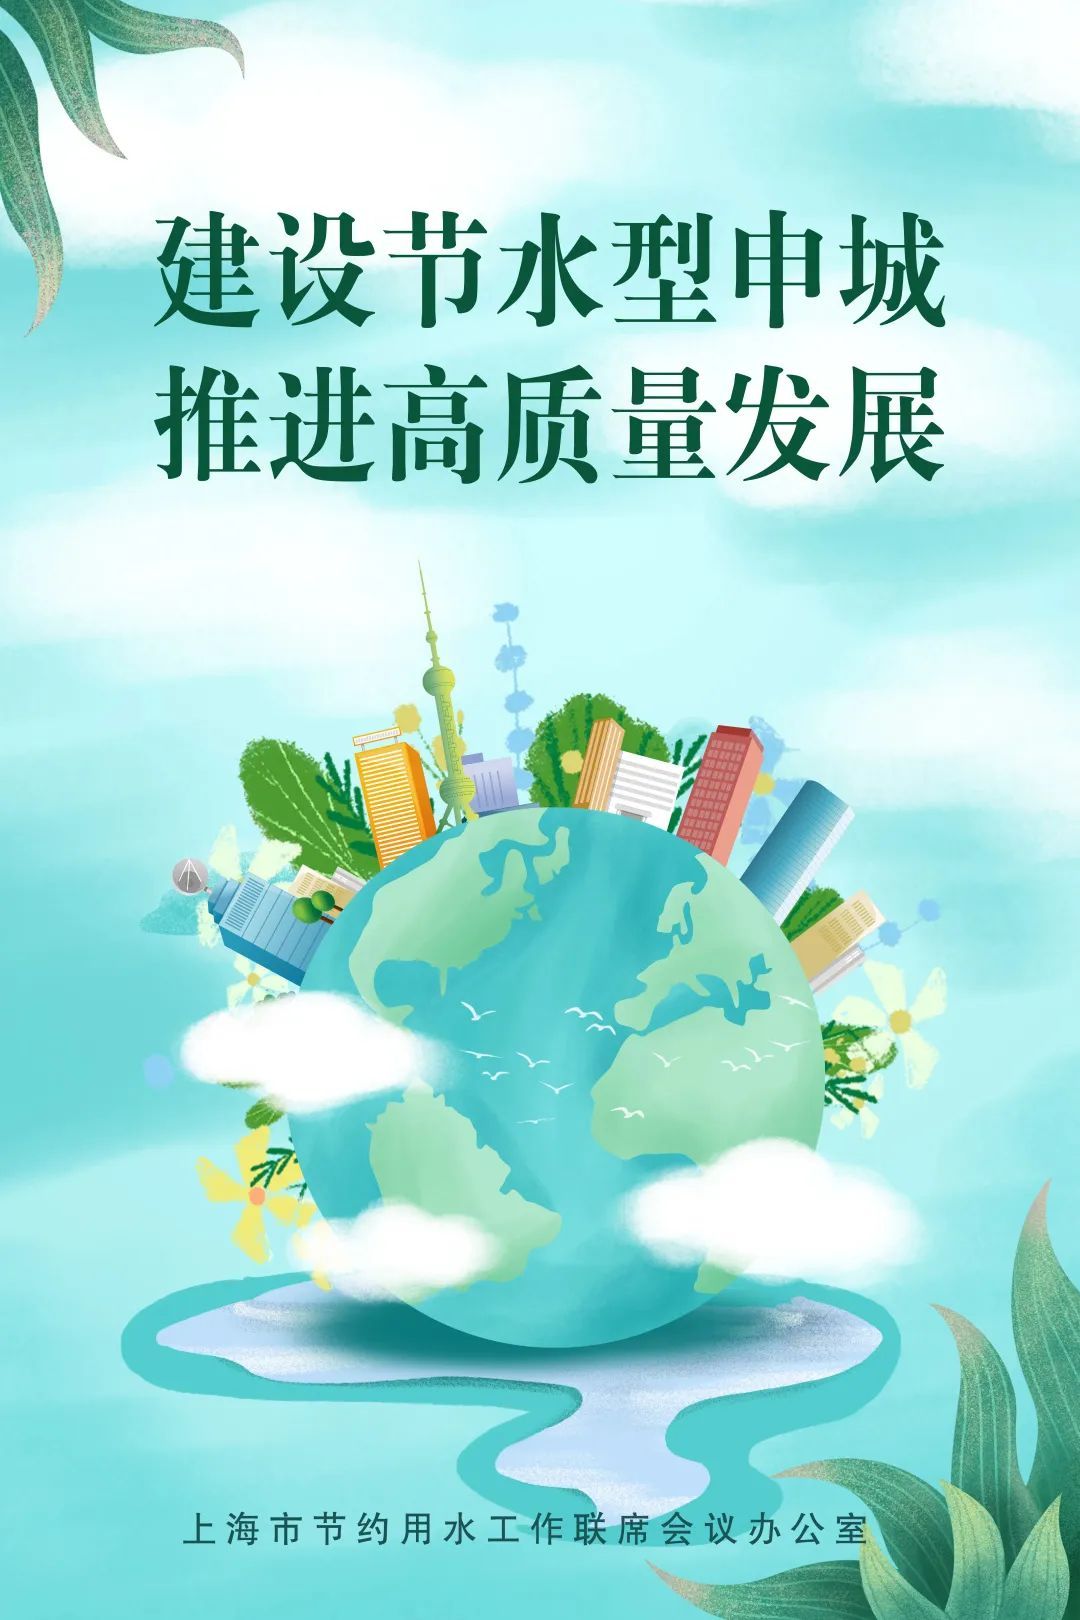 2023年上海全国节约用水宣传周主题海报和视频来啦